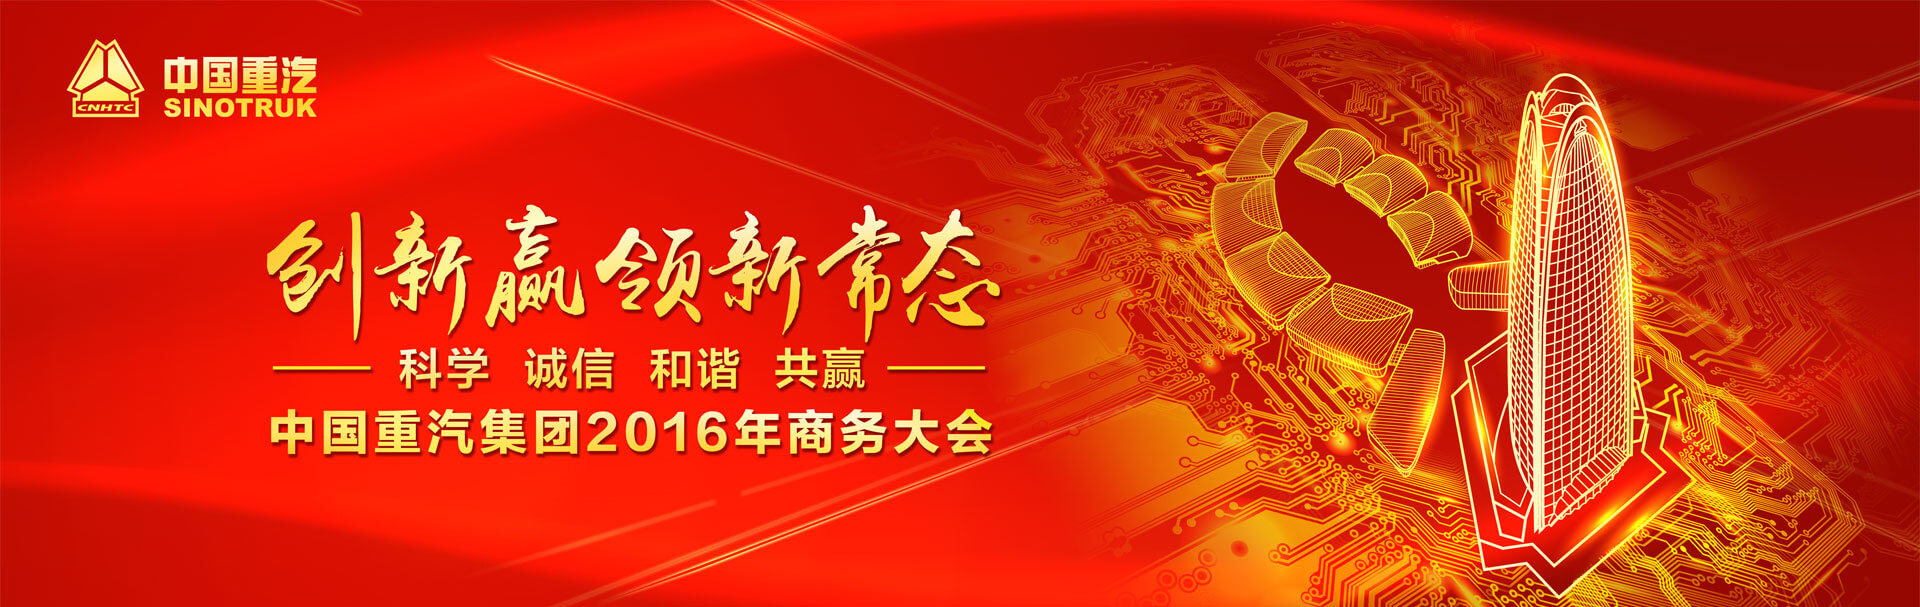 中国重汽集团2016年商务大会